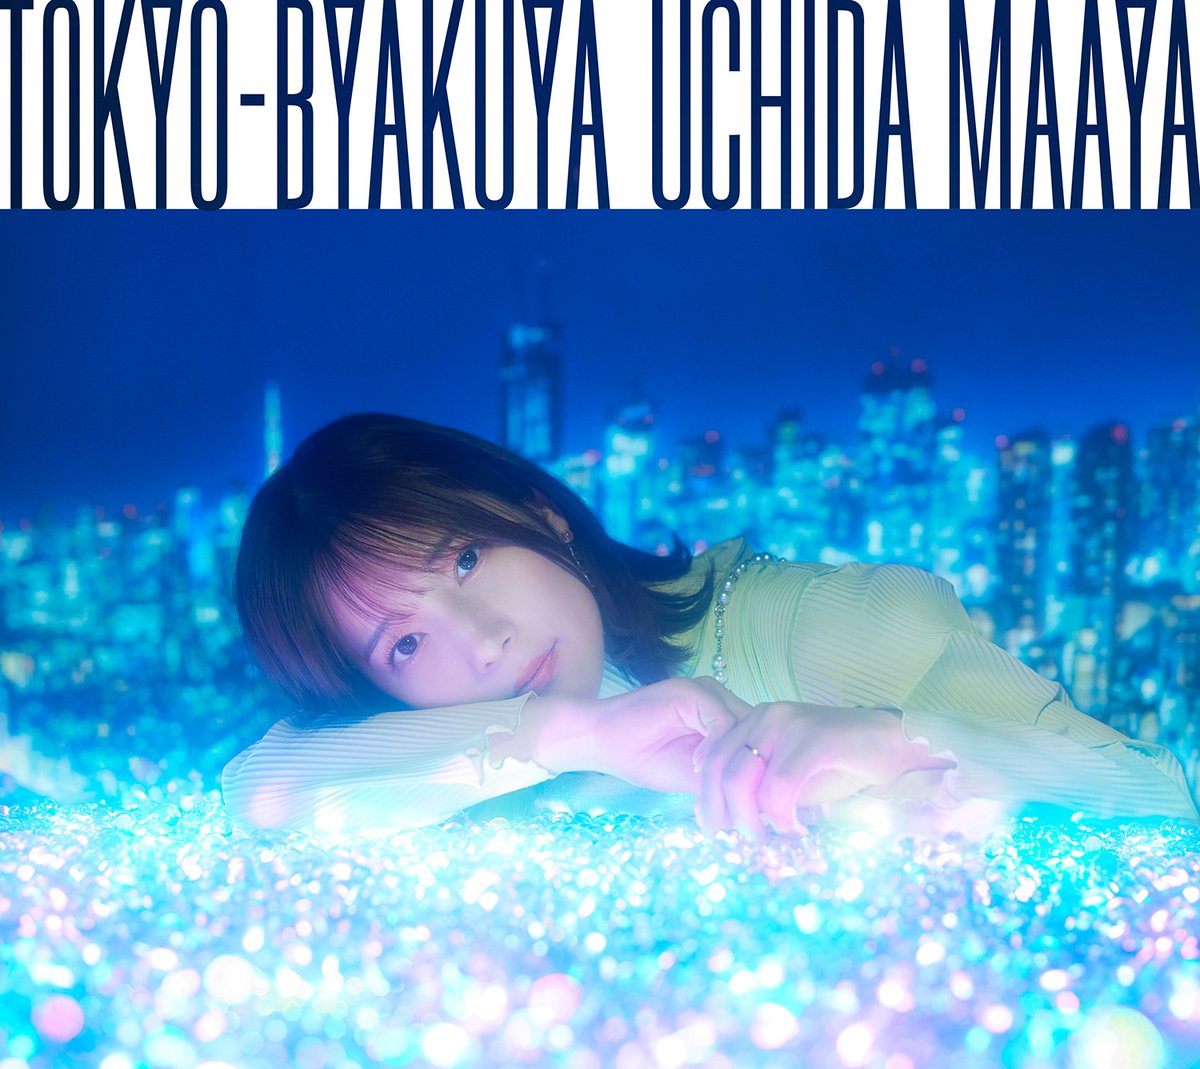 内田真礼とおはなししません？
次回ゲストに #RIRIKO さん(@RIRIPERO)をお迎えします🎸

RIRIKOさんへの質問や5/29(水)発売の4thアルバム「TOKYO-BYAKUYA」収録の「透明な合図」の感想、2人に話して欲しいことなど、メールをお待ちしています✨

📫 maaya@joqr.net 
#ohanaC

joqr.co.jp/qr/program/maa…